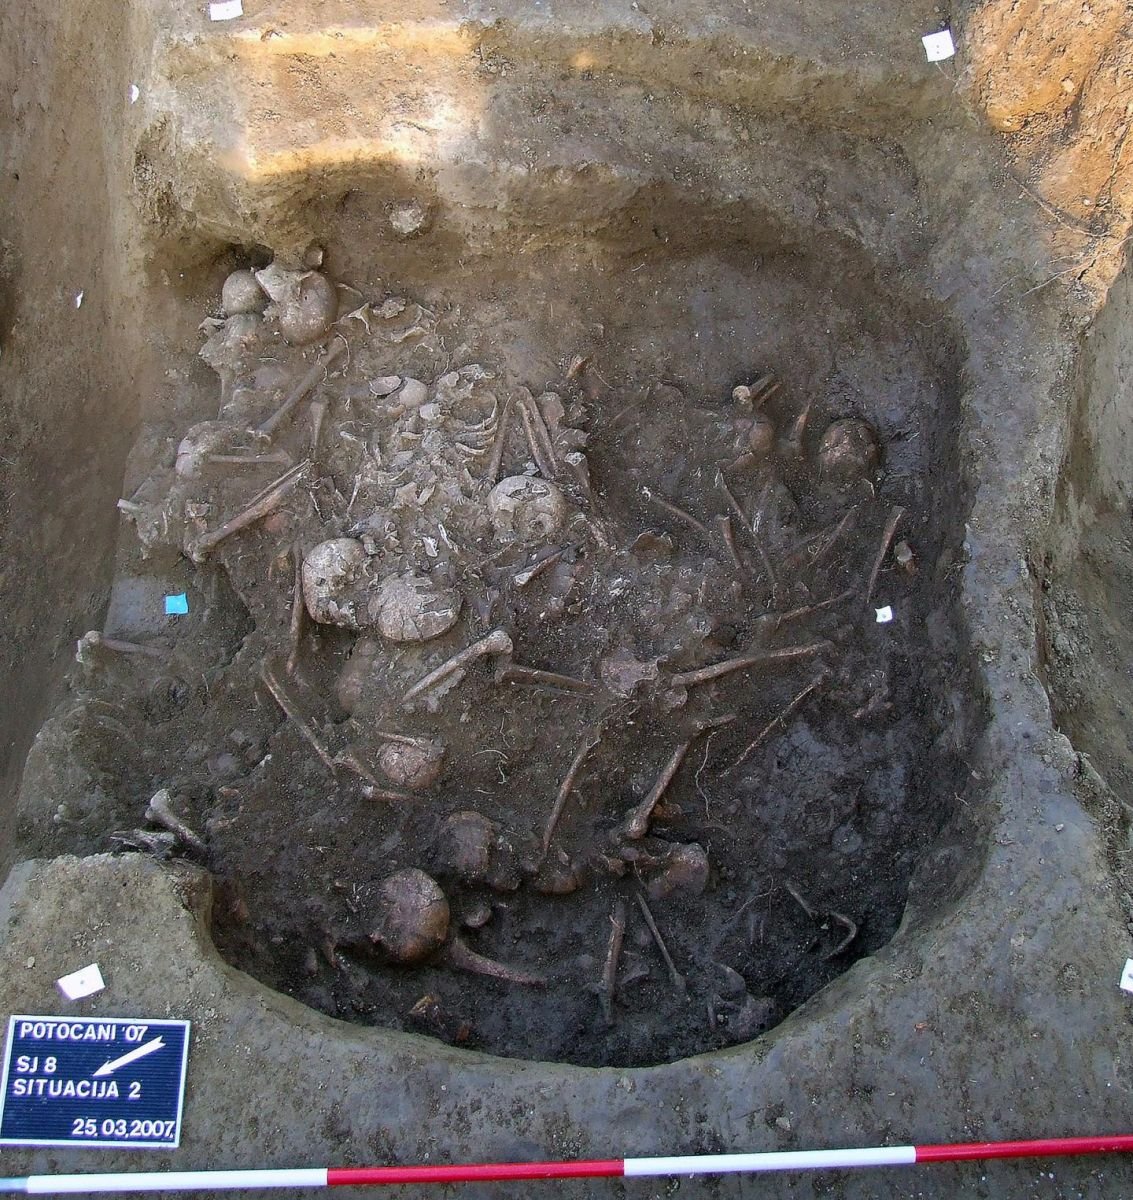 Обнаруженные на месте массового убийства скелеты, фото: Университет Вайоминга